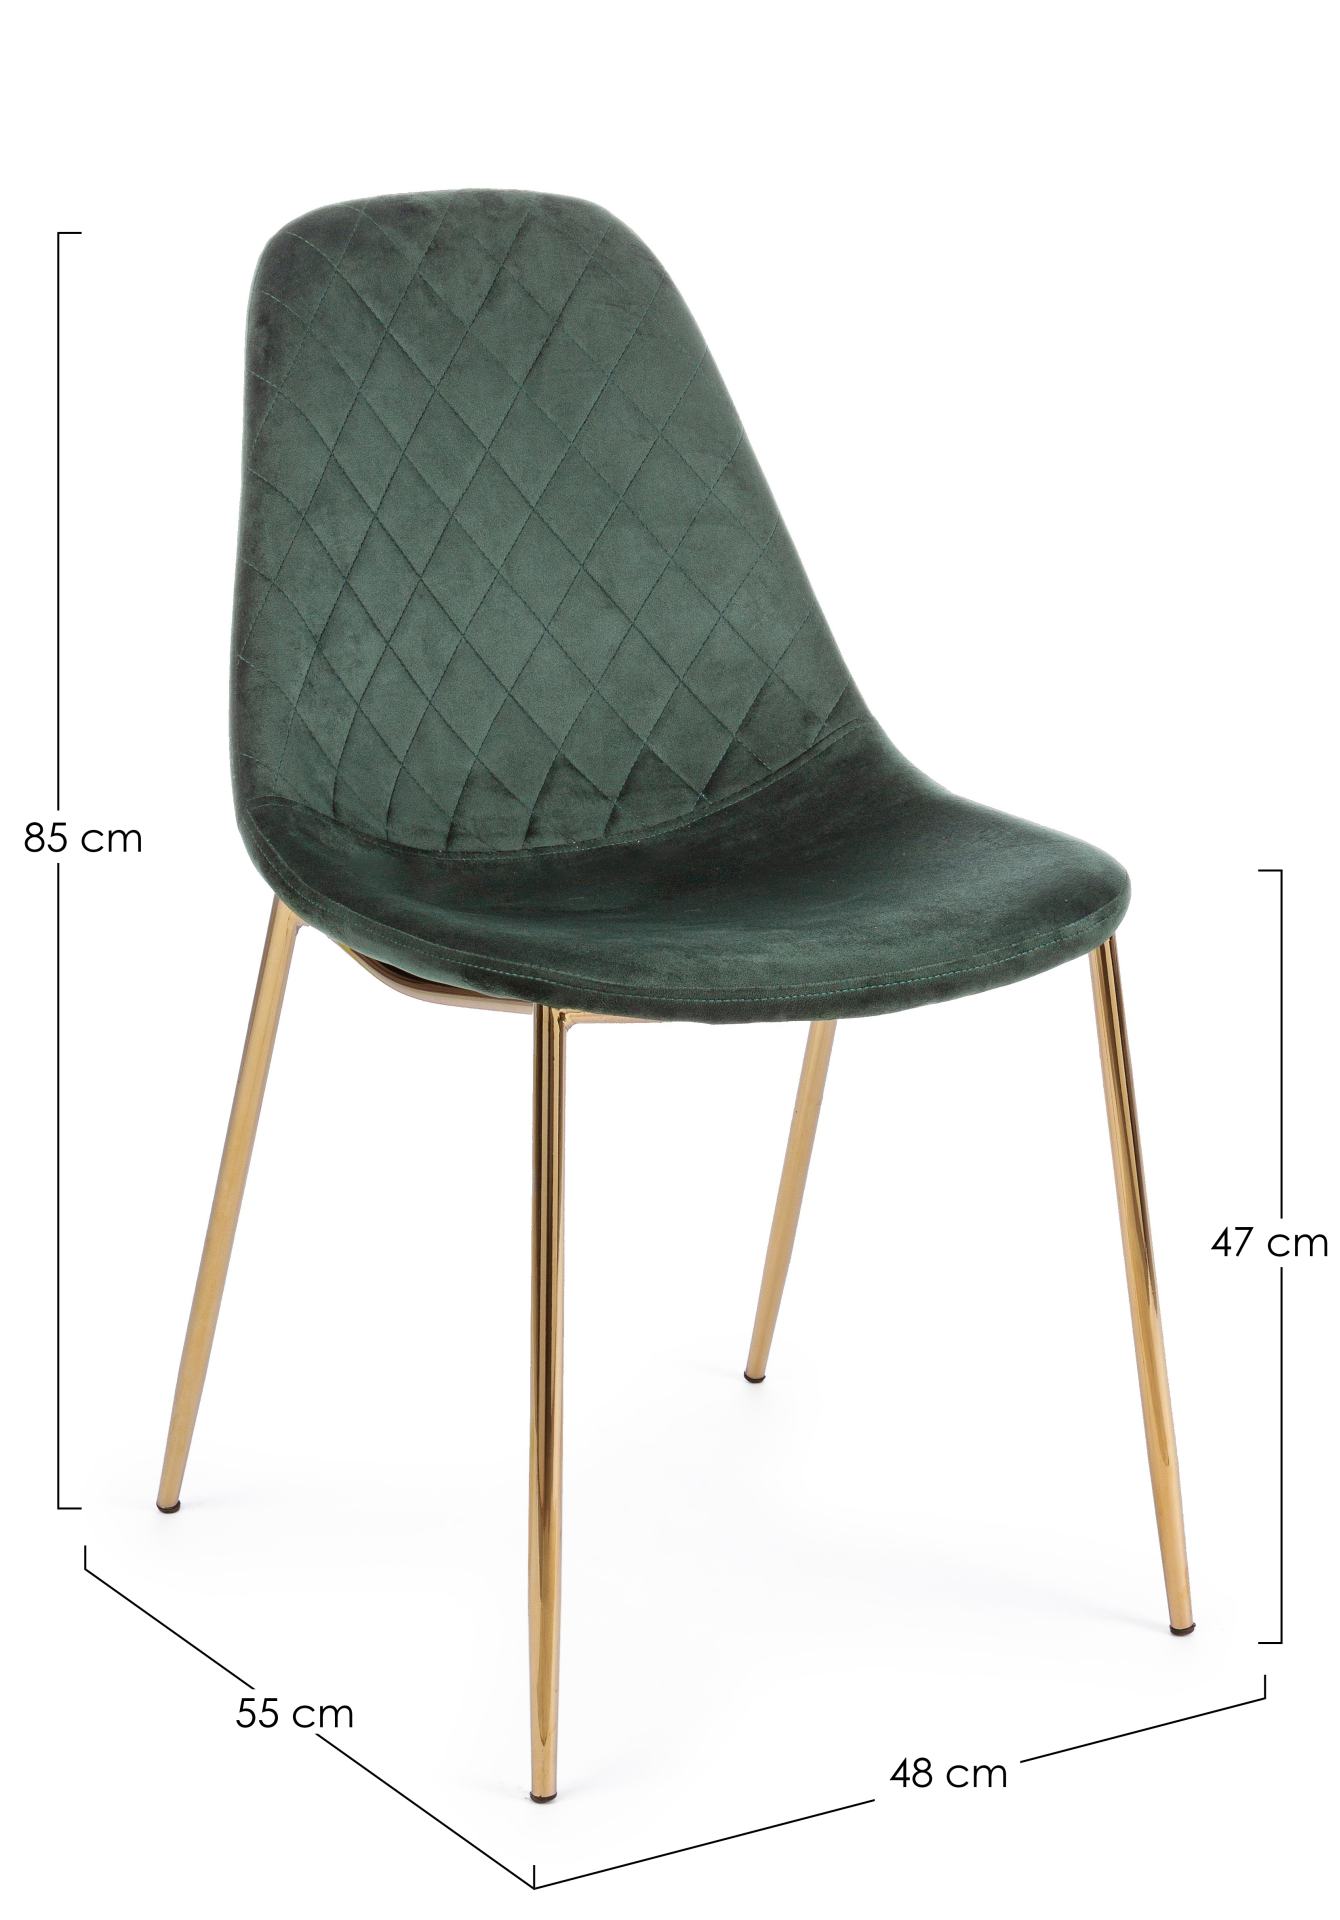 Der Esszimmerstuhl Terry überzeugt mit seinem modernem Design. Gefertigt wurde der Stuhl aus einem Samt-Bezug, welcher einen Dunkelgrünen Farbton besitzt. Das Gestell ist aus Metall und ist Gold. Die Sitzhöhe beträgt 47 cm.